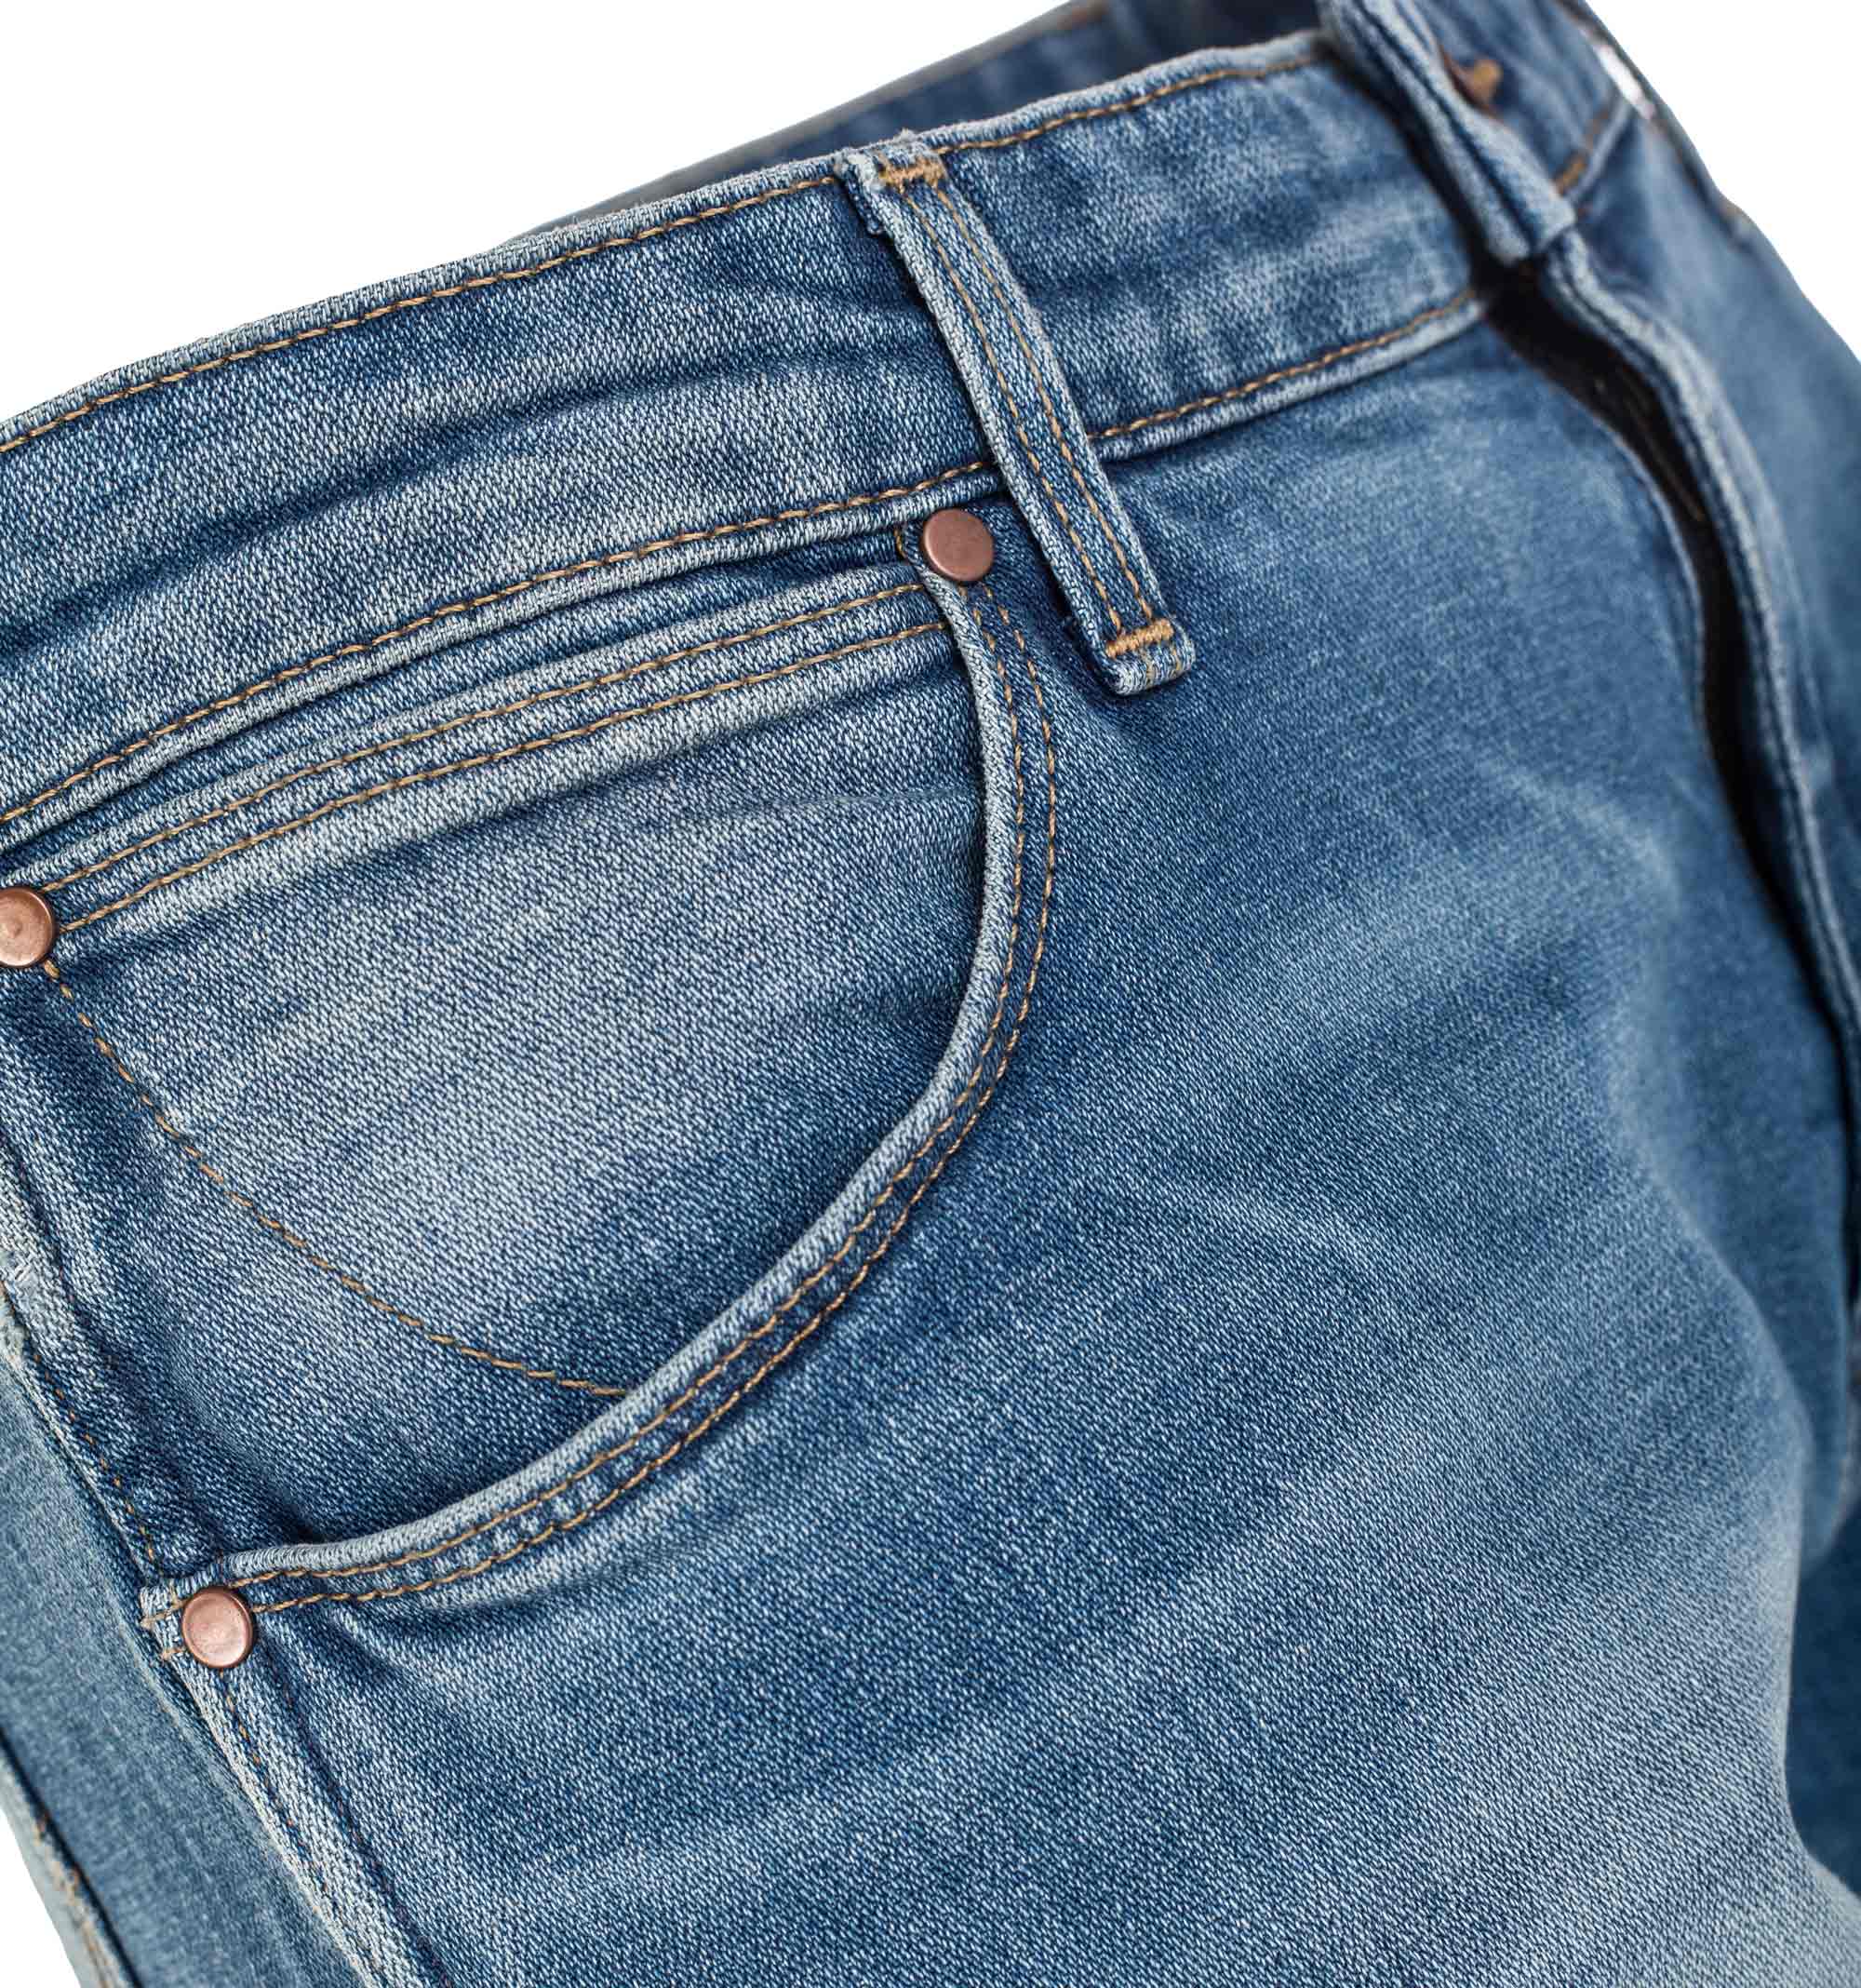 Women’s denim trousers